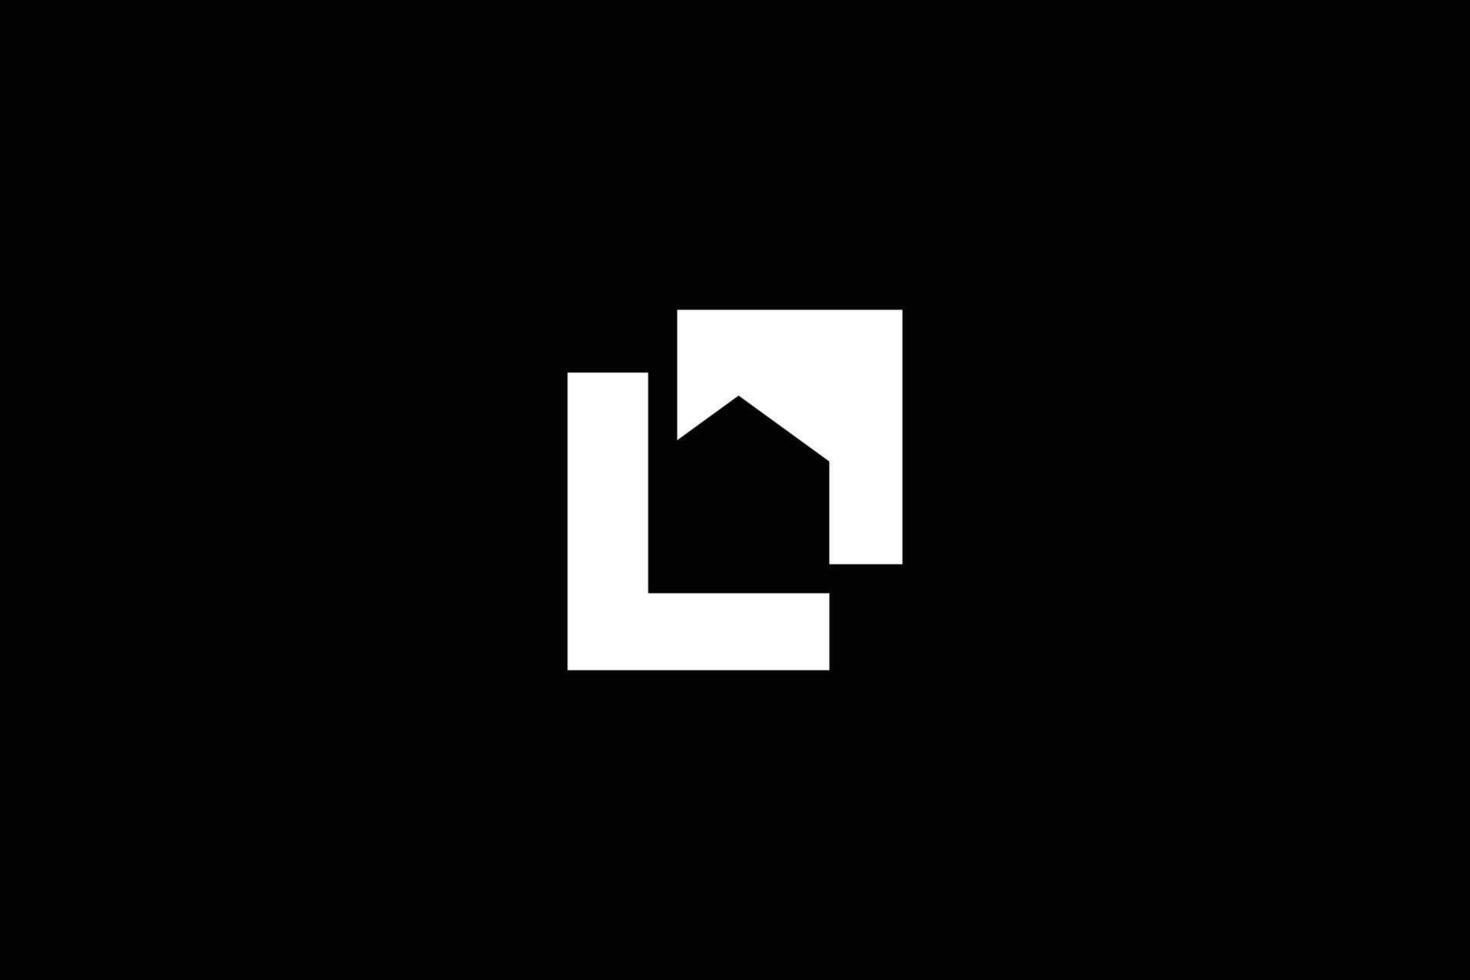 Letter L Real Estate Logo Design Template vector